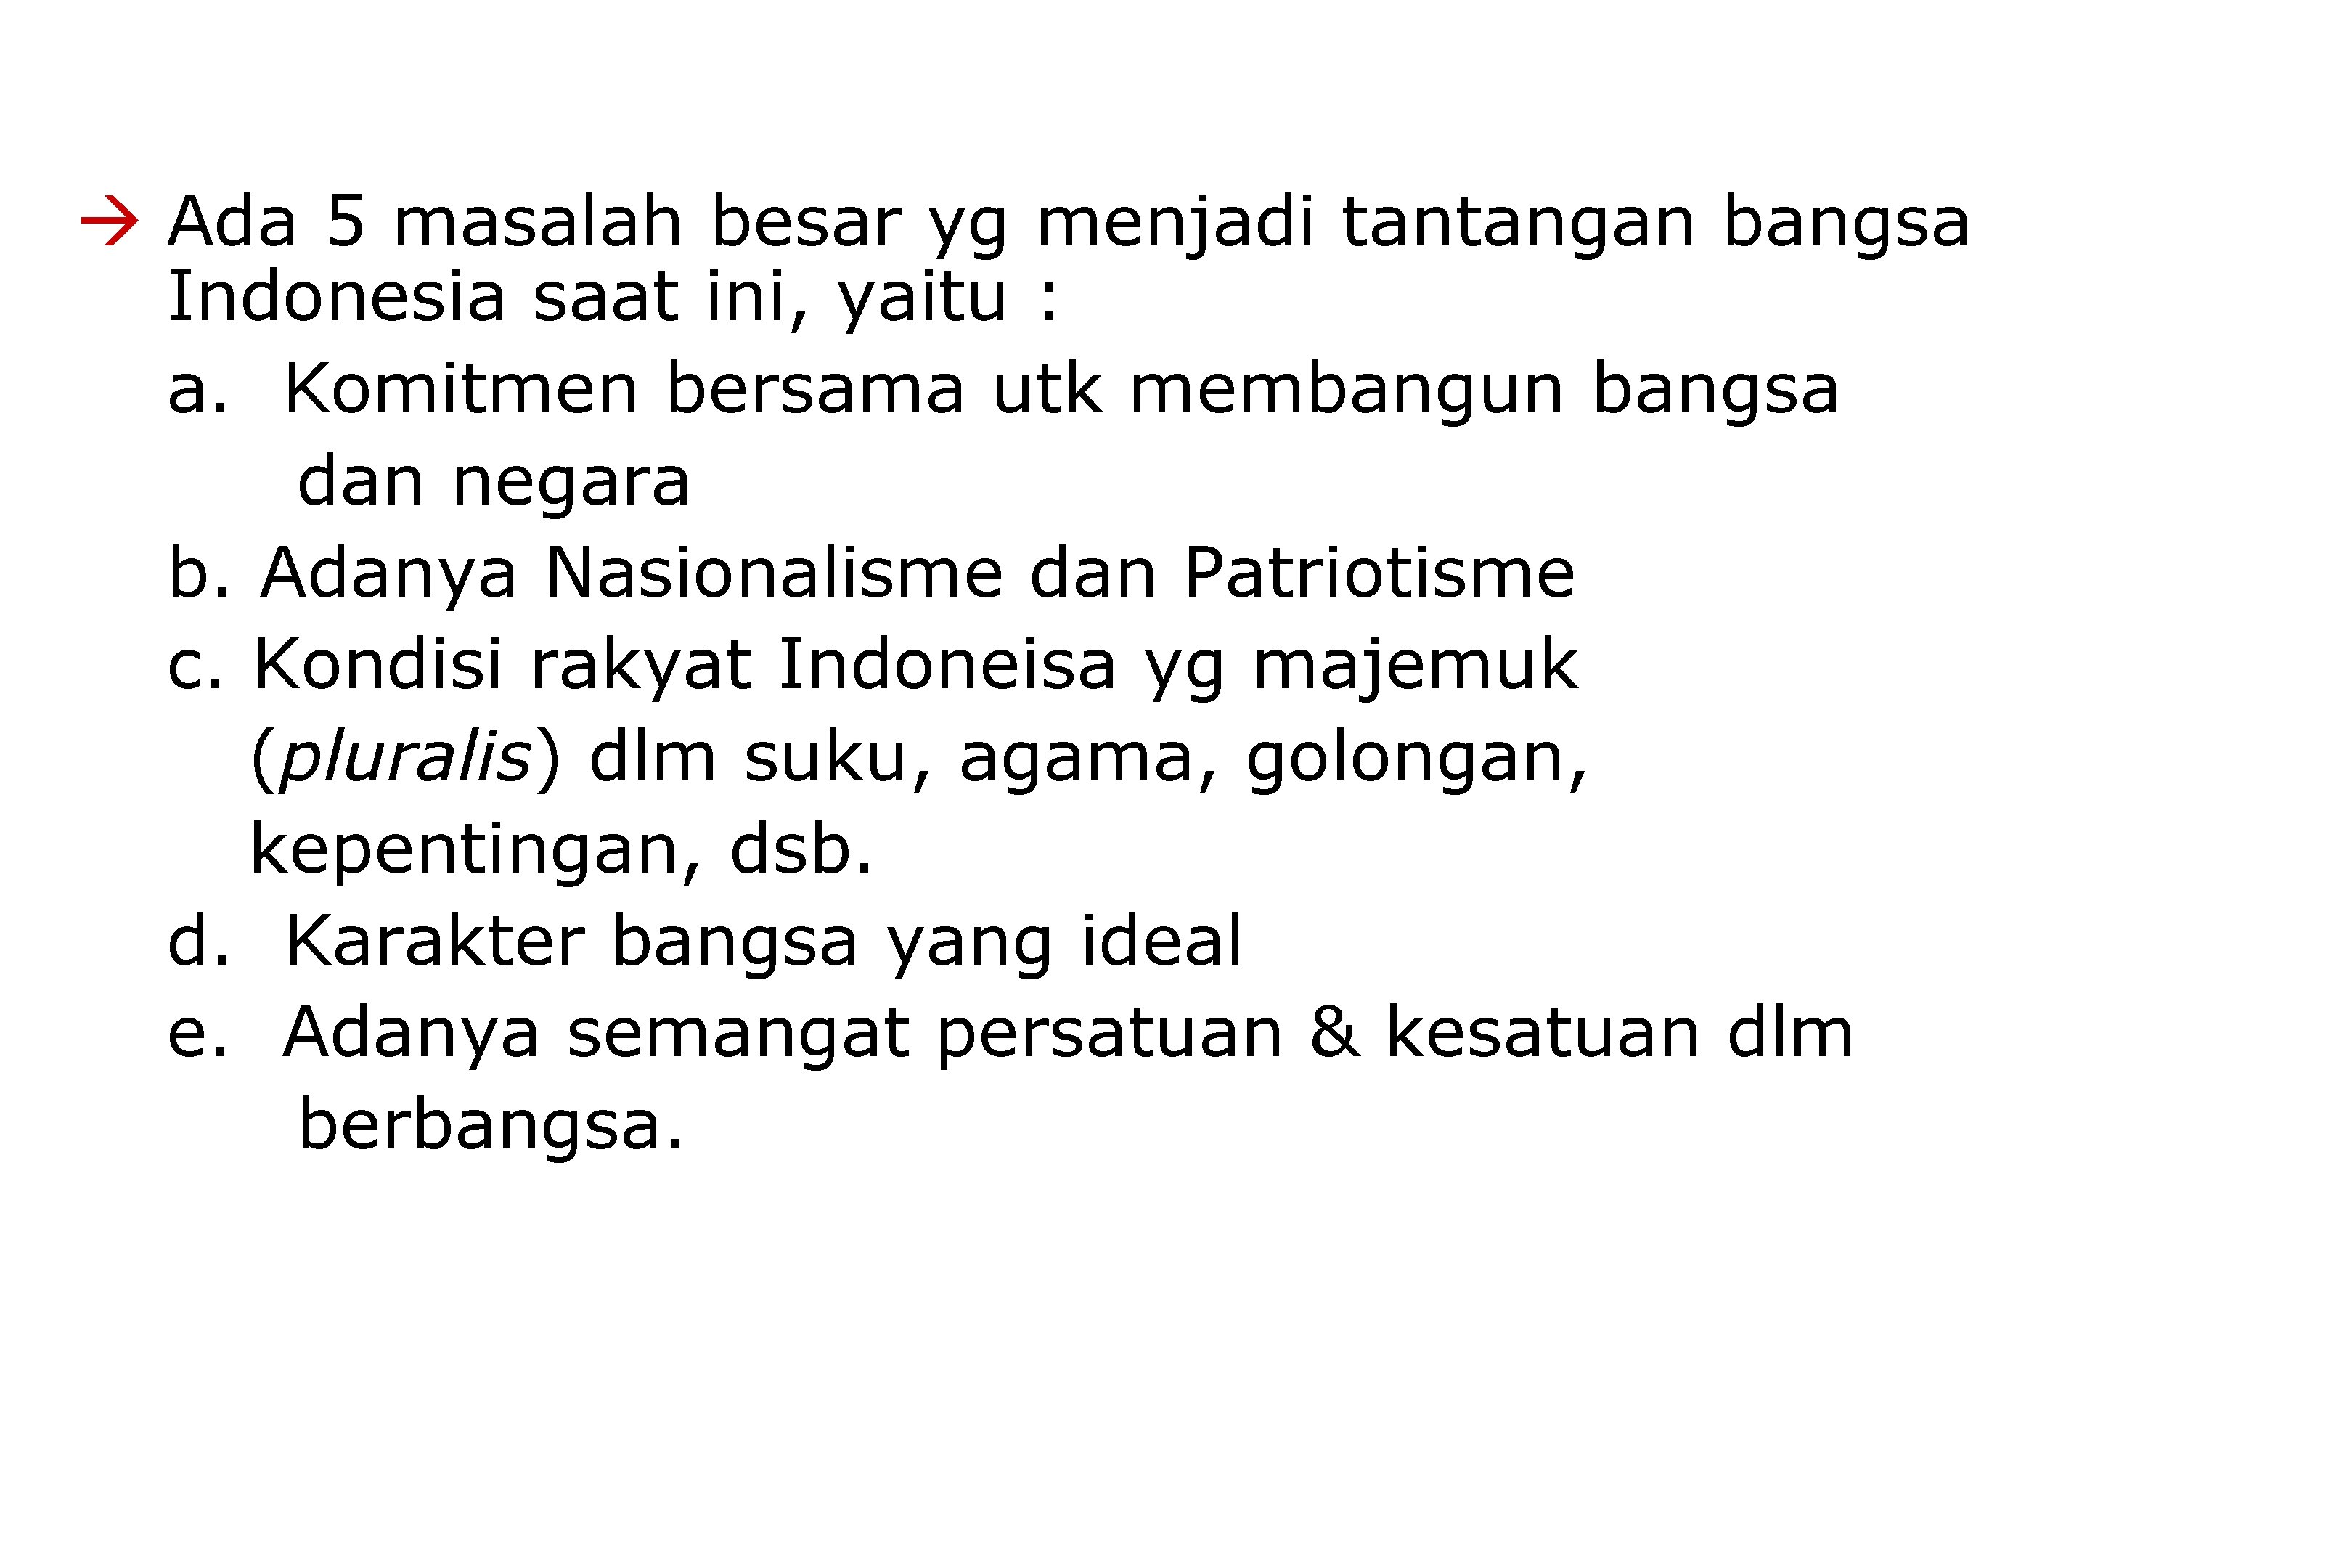  Ada 5 masalah besar yg menjadi tantangan bangsa Indonesia saat ini, yaitu :